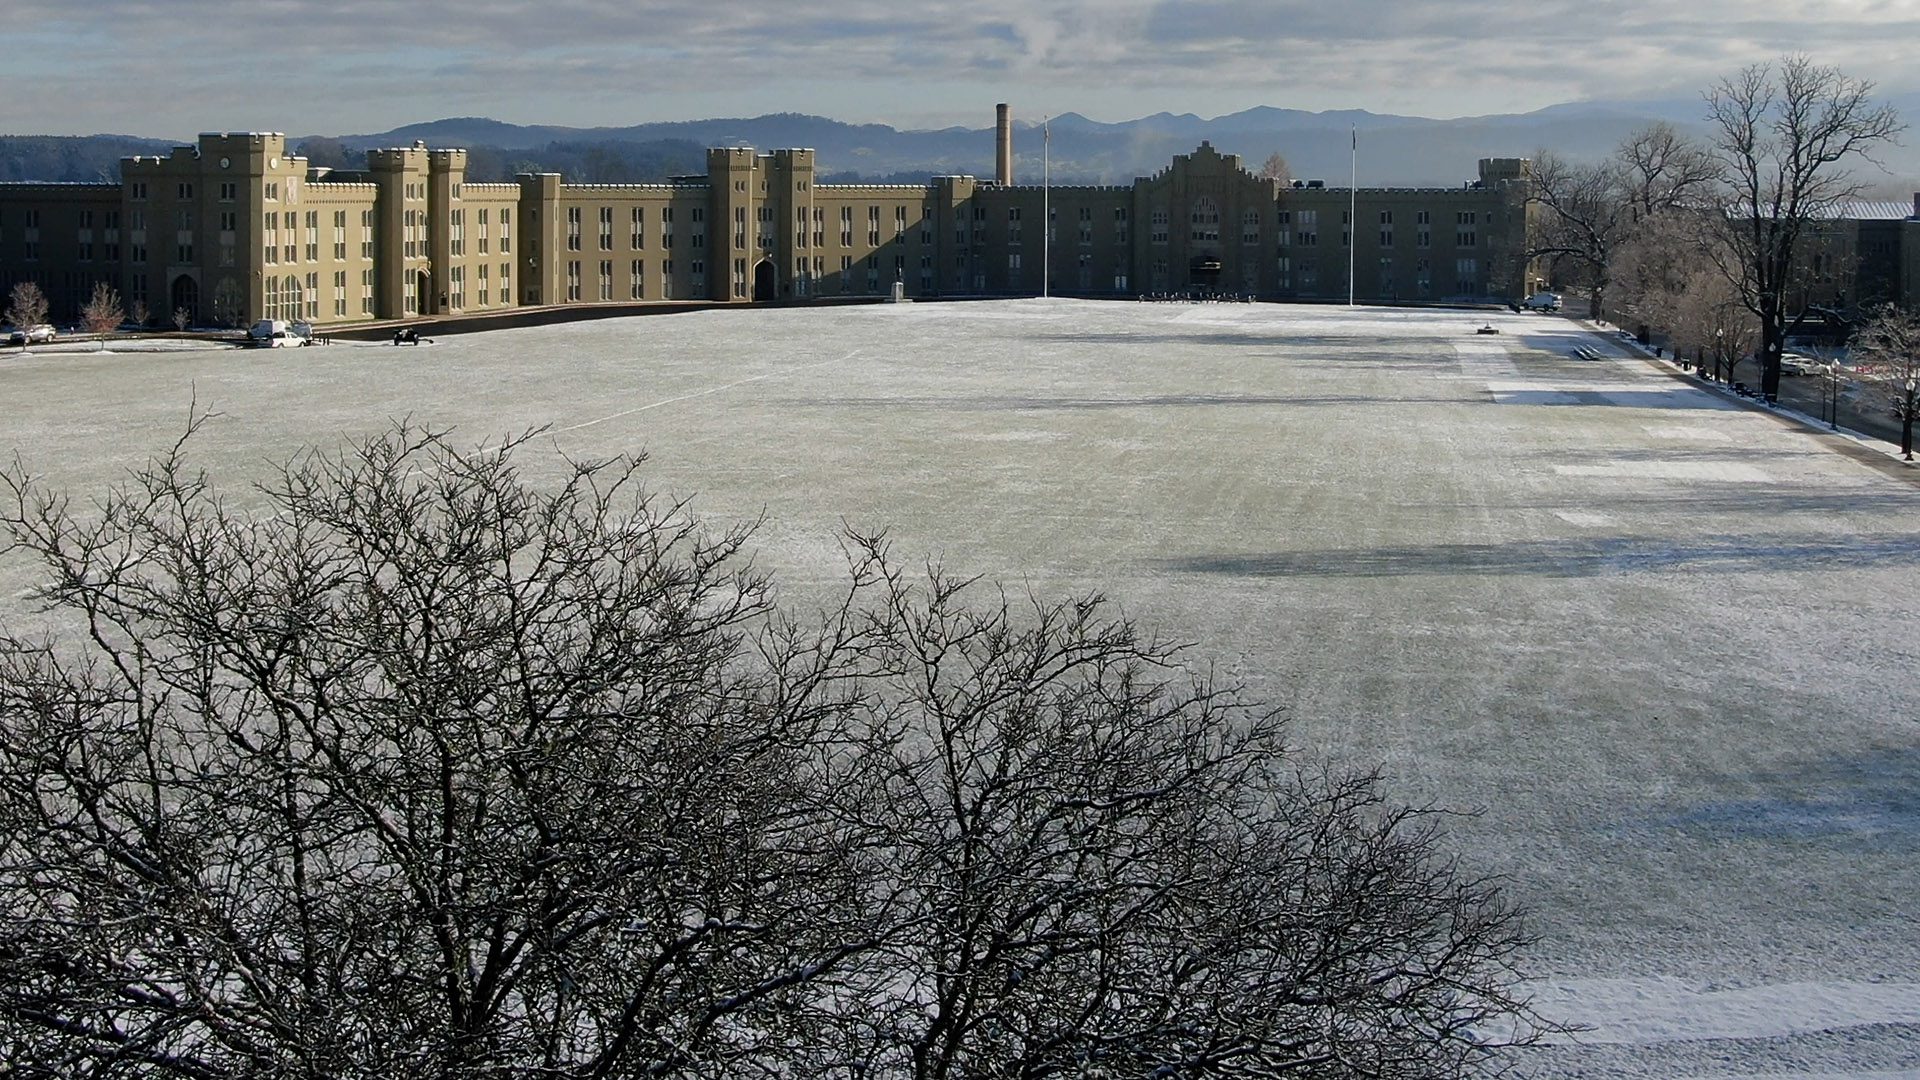 snow covered Parade Ground and barracks